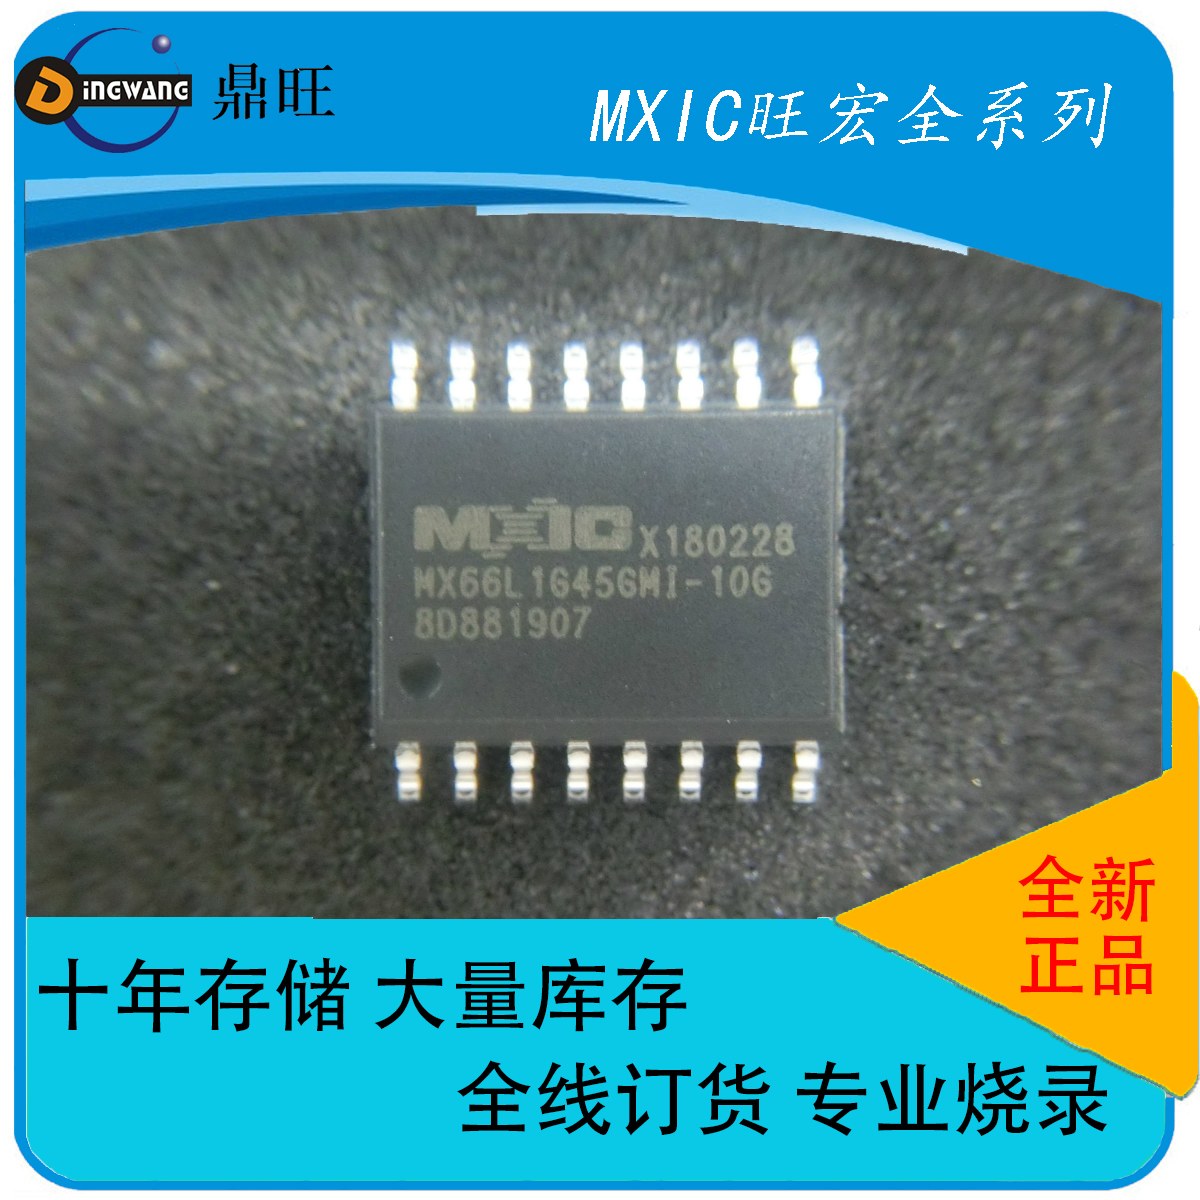 MX66L1G45GMI-10G